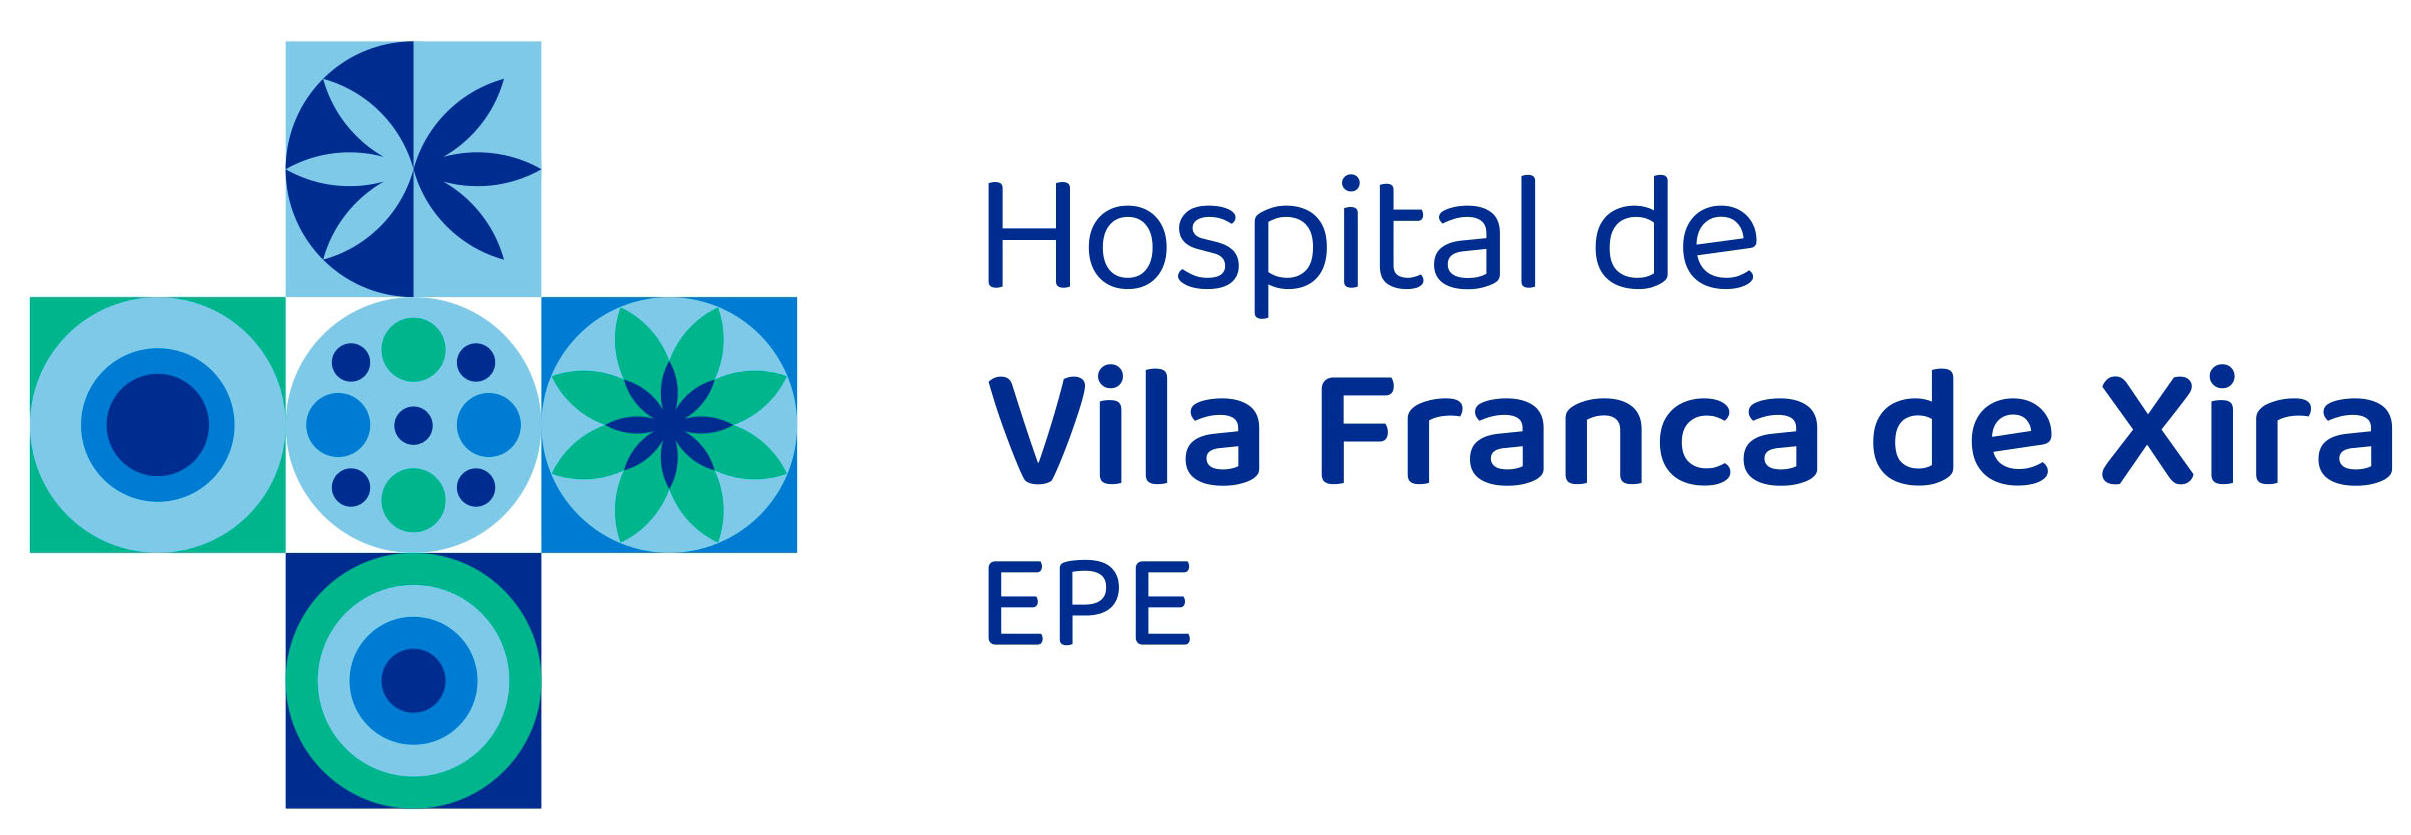 hospital-de-vila-franca-de-xira-logo-logotipo